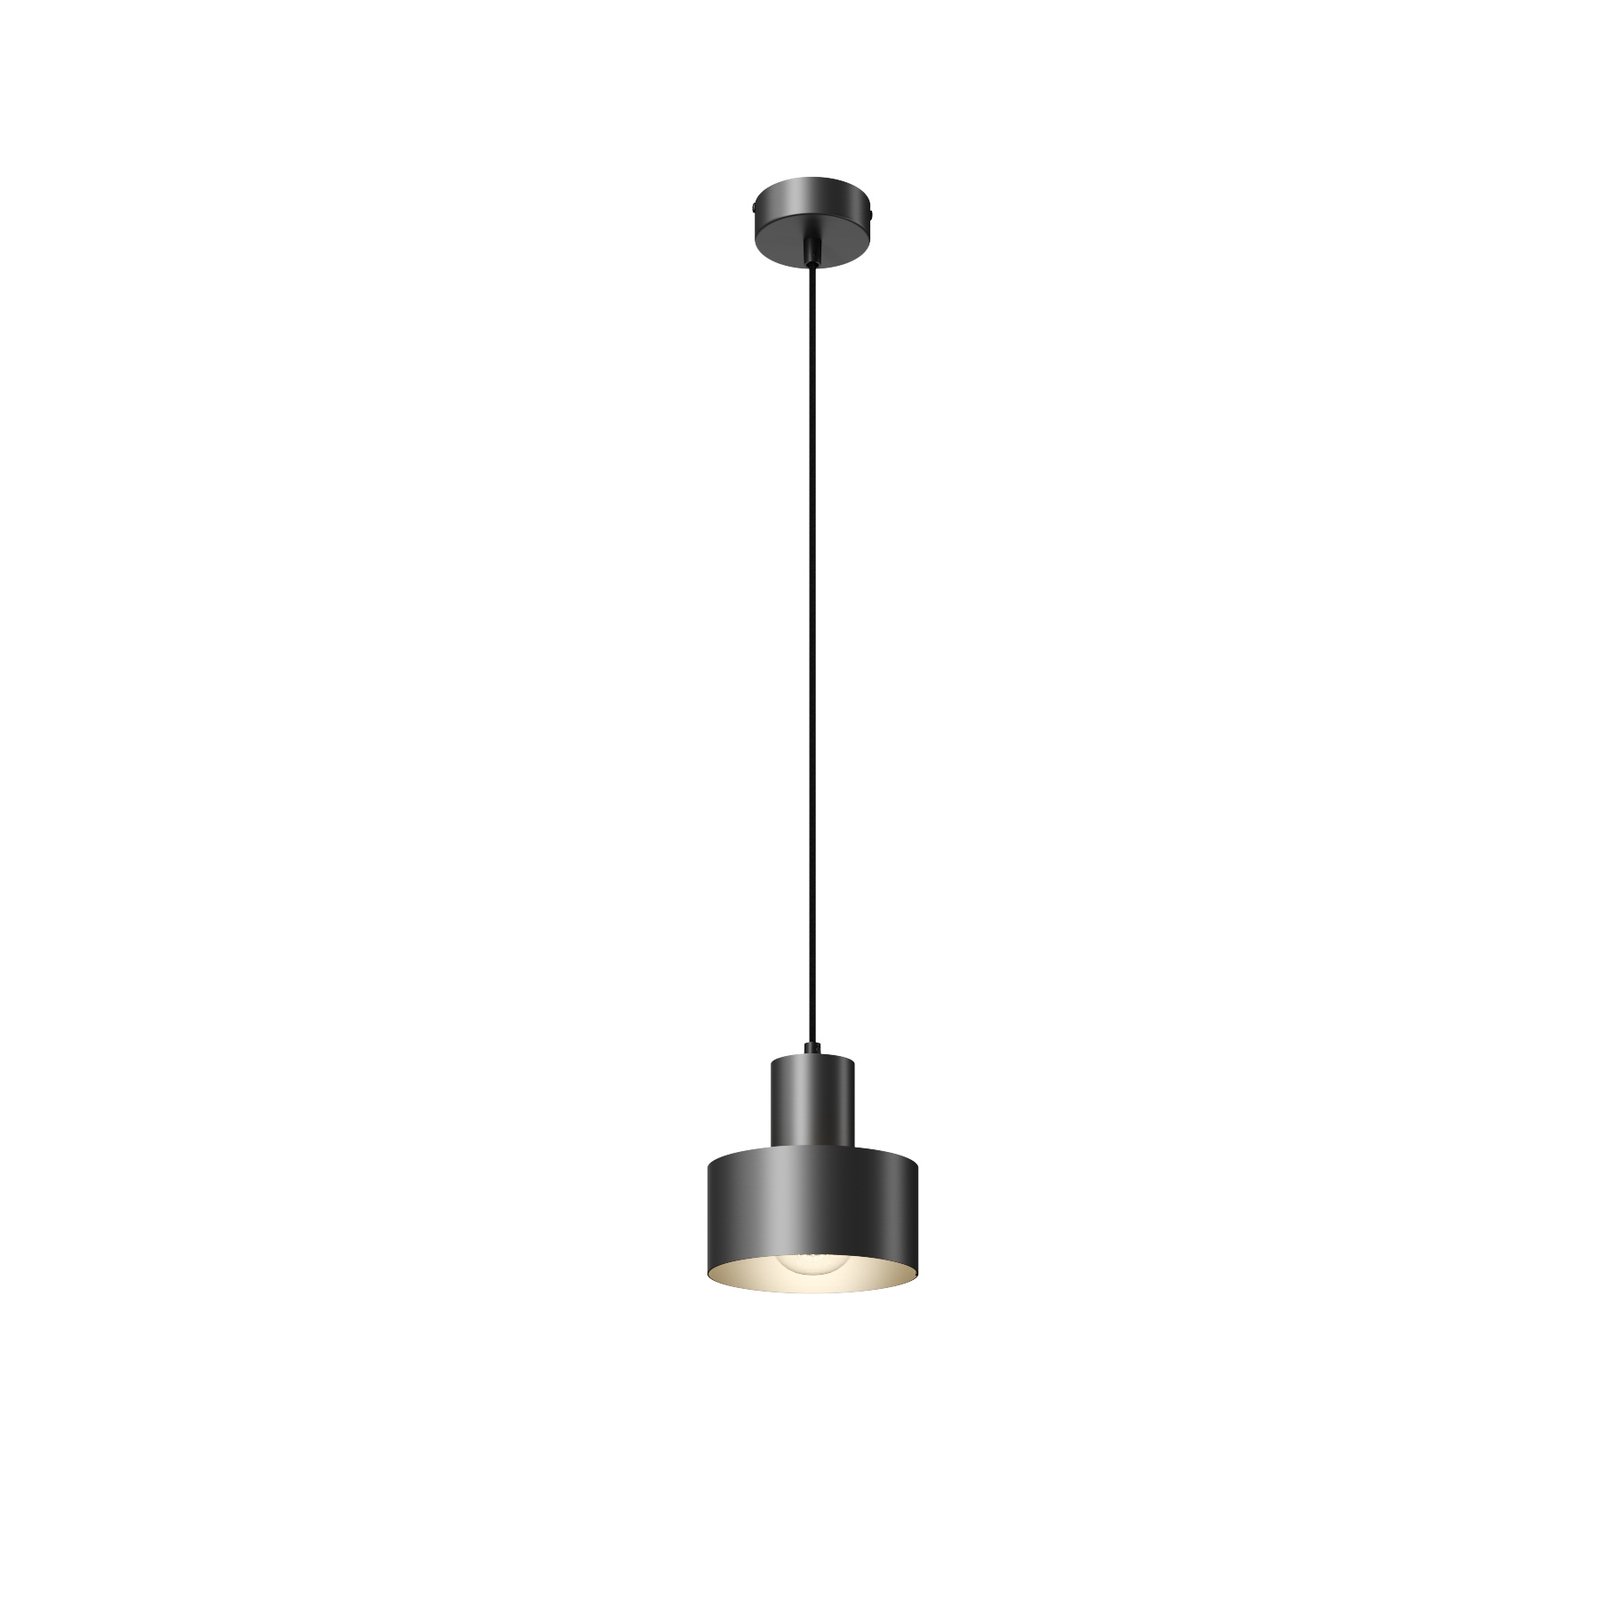 Hanglamp Rif van metaal, zwart, Ø 15 cm